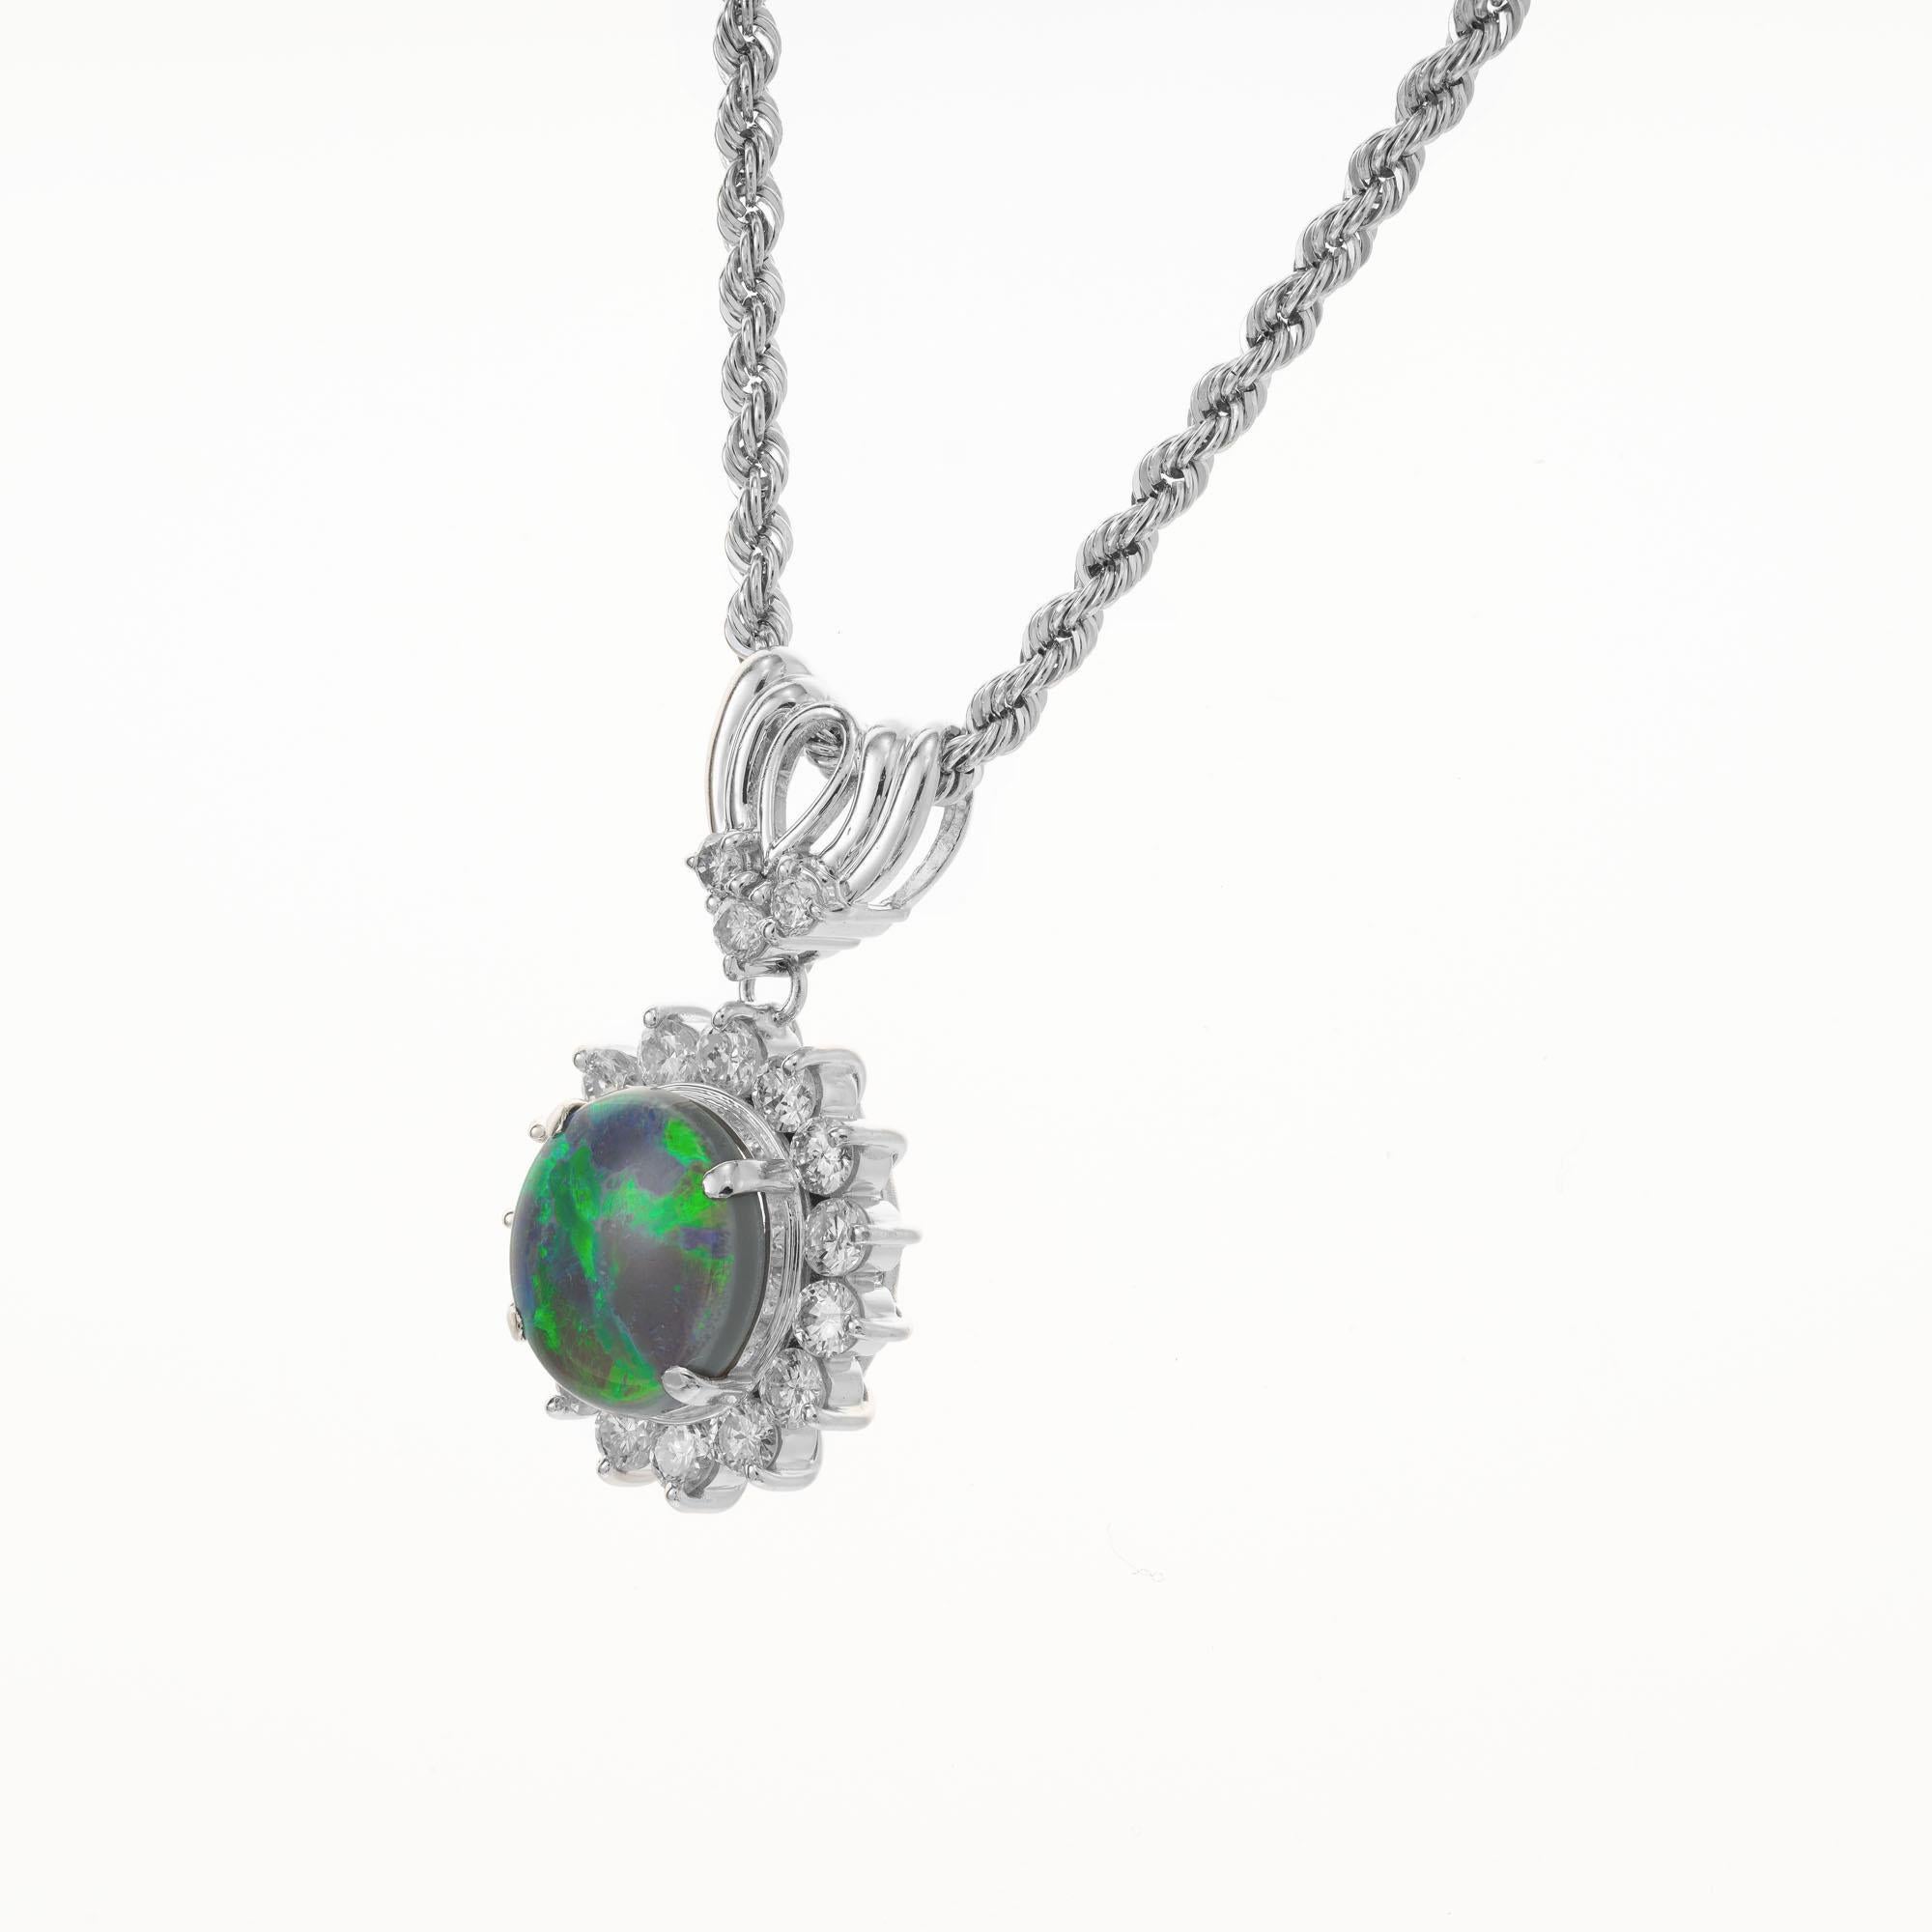 Opale naturelle non traitée de 2,28 carats, certifiée par le GIA, de couleur gris foncé avec des reflets verts et bleus, avec un halo de 18 diamants ronds de taille brillant. la chaîne de 18 pouces et l'anse sont également en platine. 

1 opale